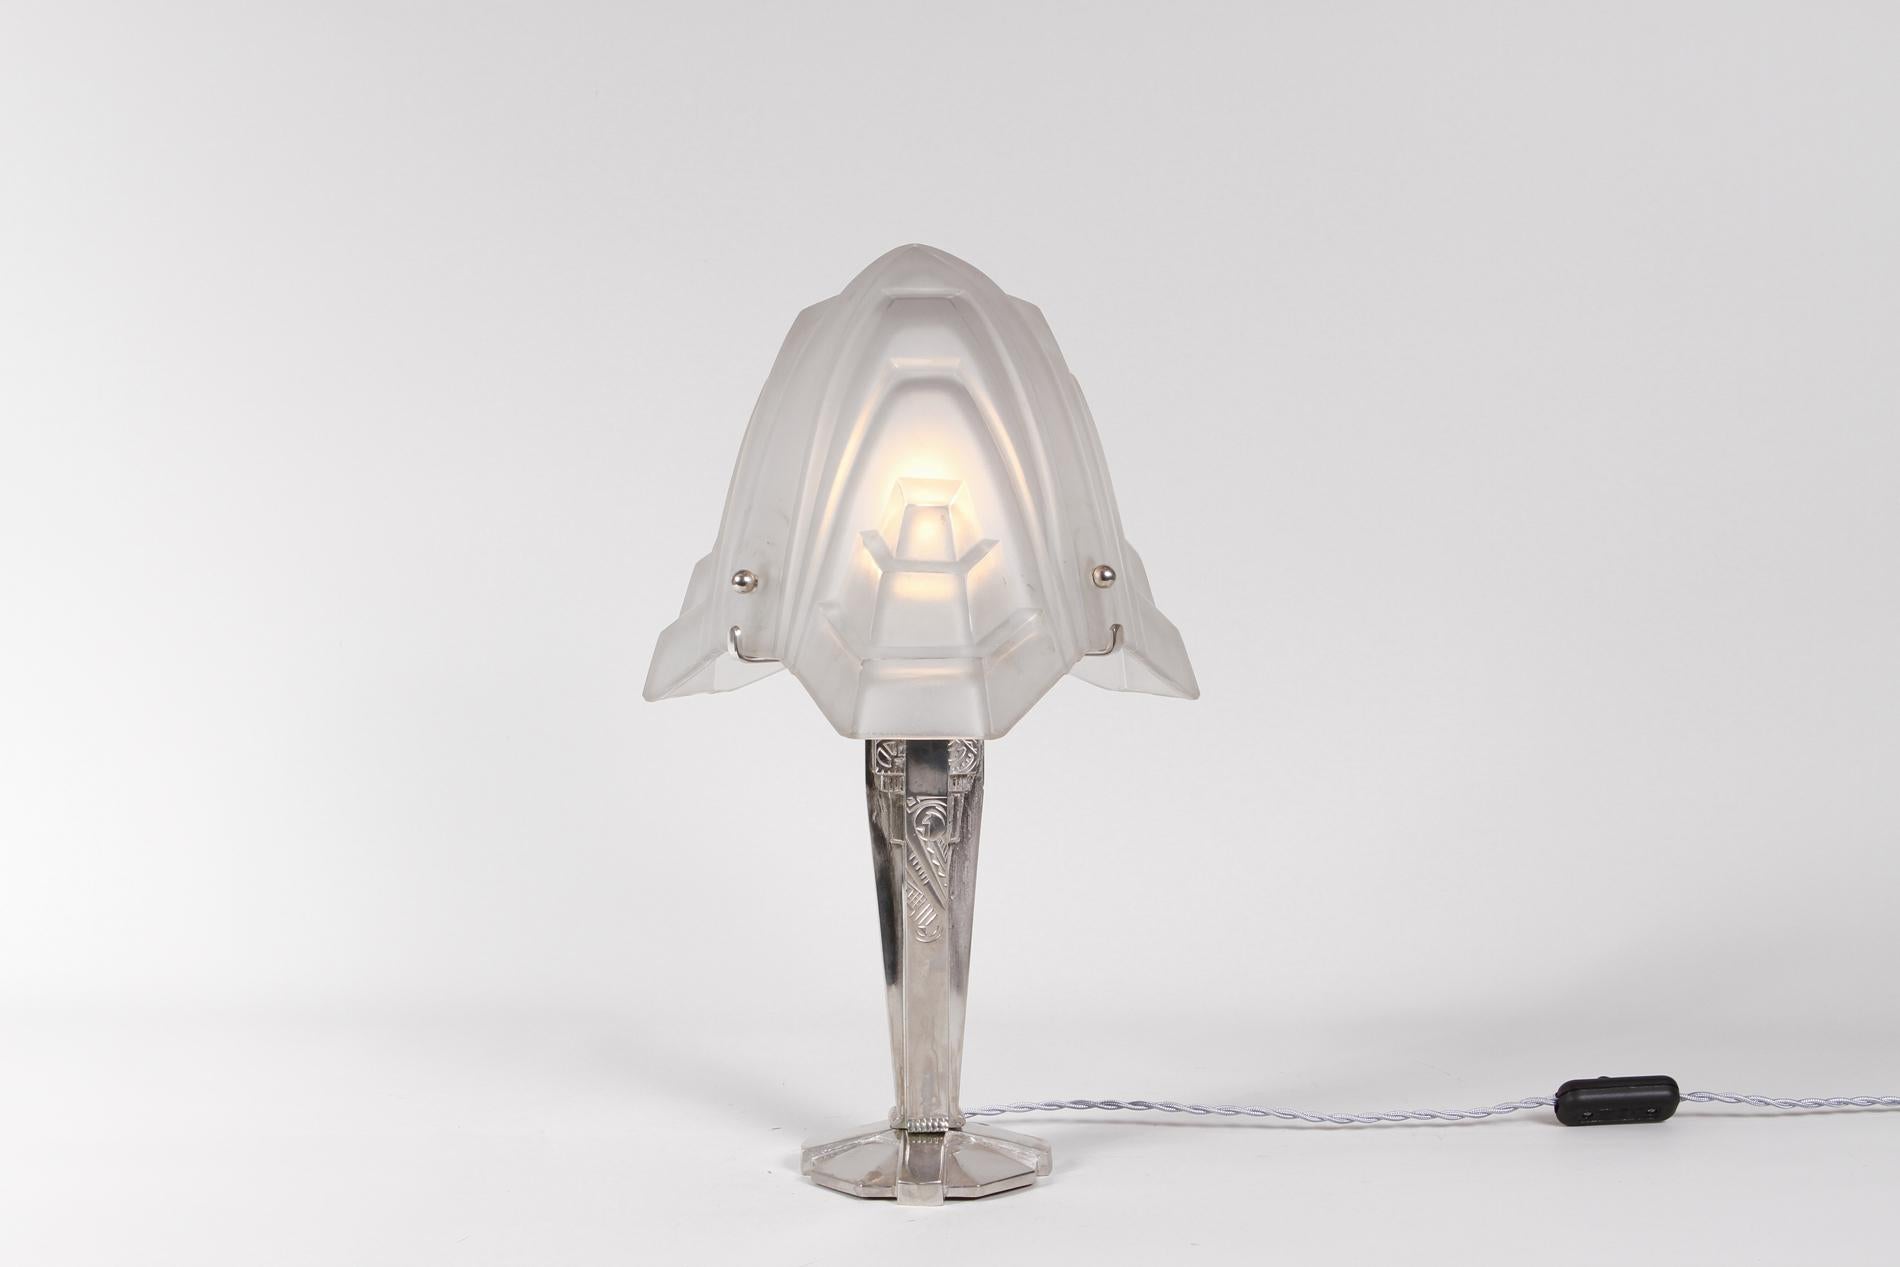 Französische Art-Déco-Tischlampe mit vernickelter Bronze für den Sockel und Glaslampenschirm von Degué, 1930. 

Die Besonderheit der Lampe ist die Form des Glases, das wie eine Blume gestaltet ist, und der Sockel mit einem zarten Blumendekor, der